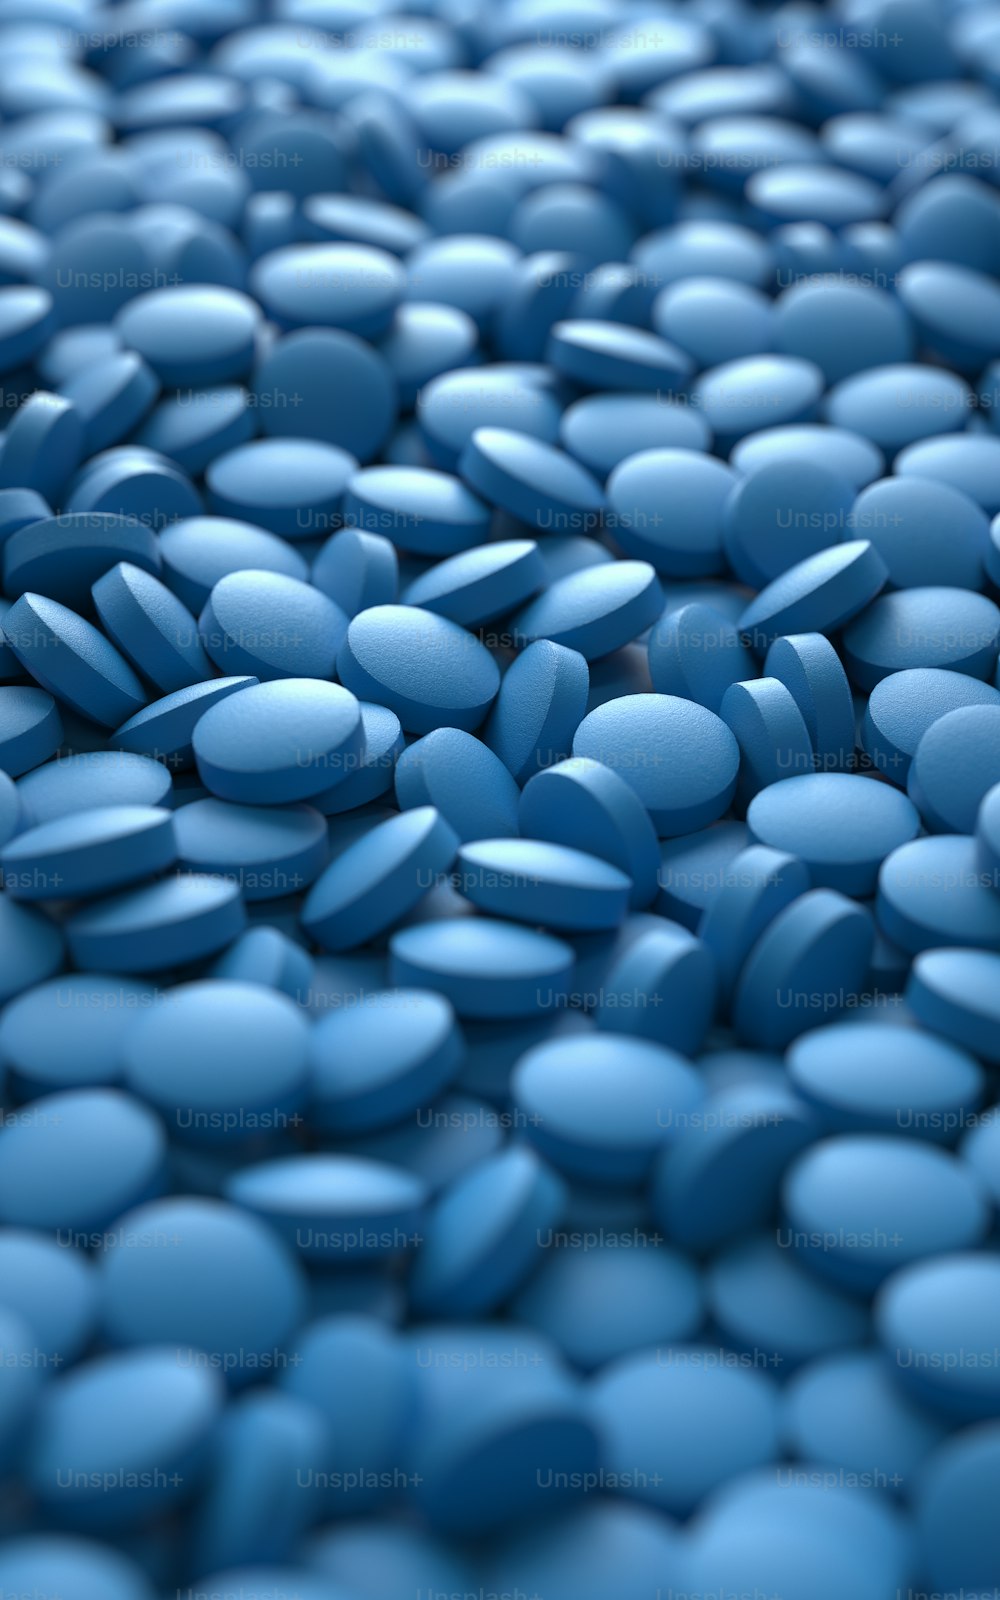 Pila de píldoras coloridas, renderizado 3D, imagen conceptual.